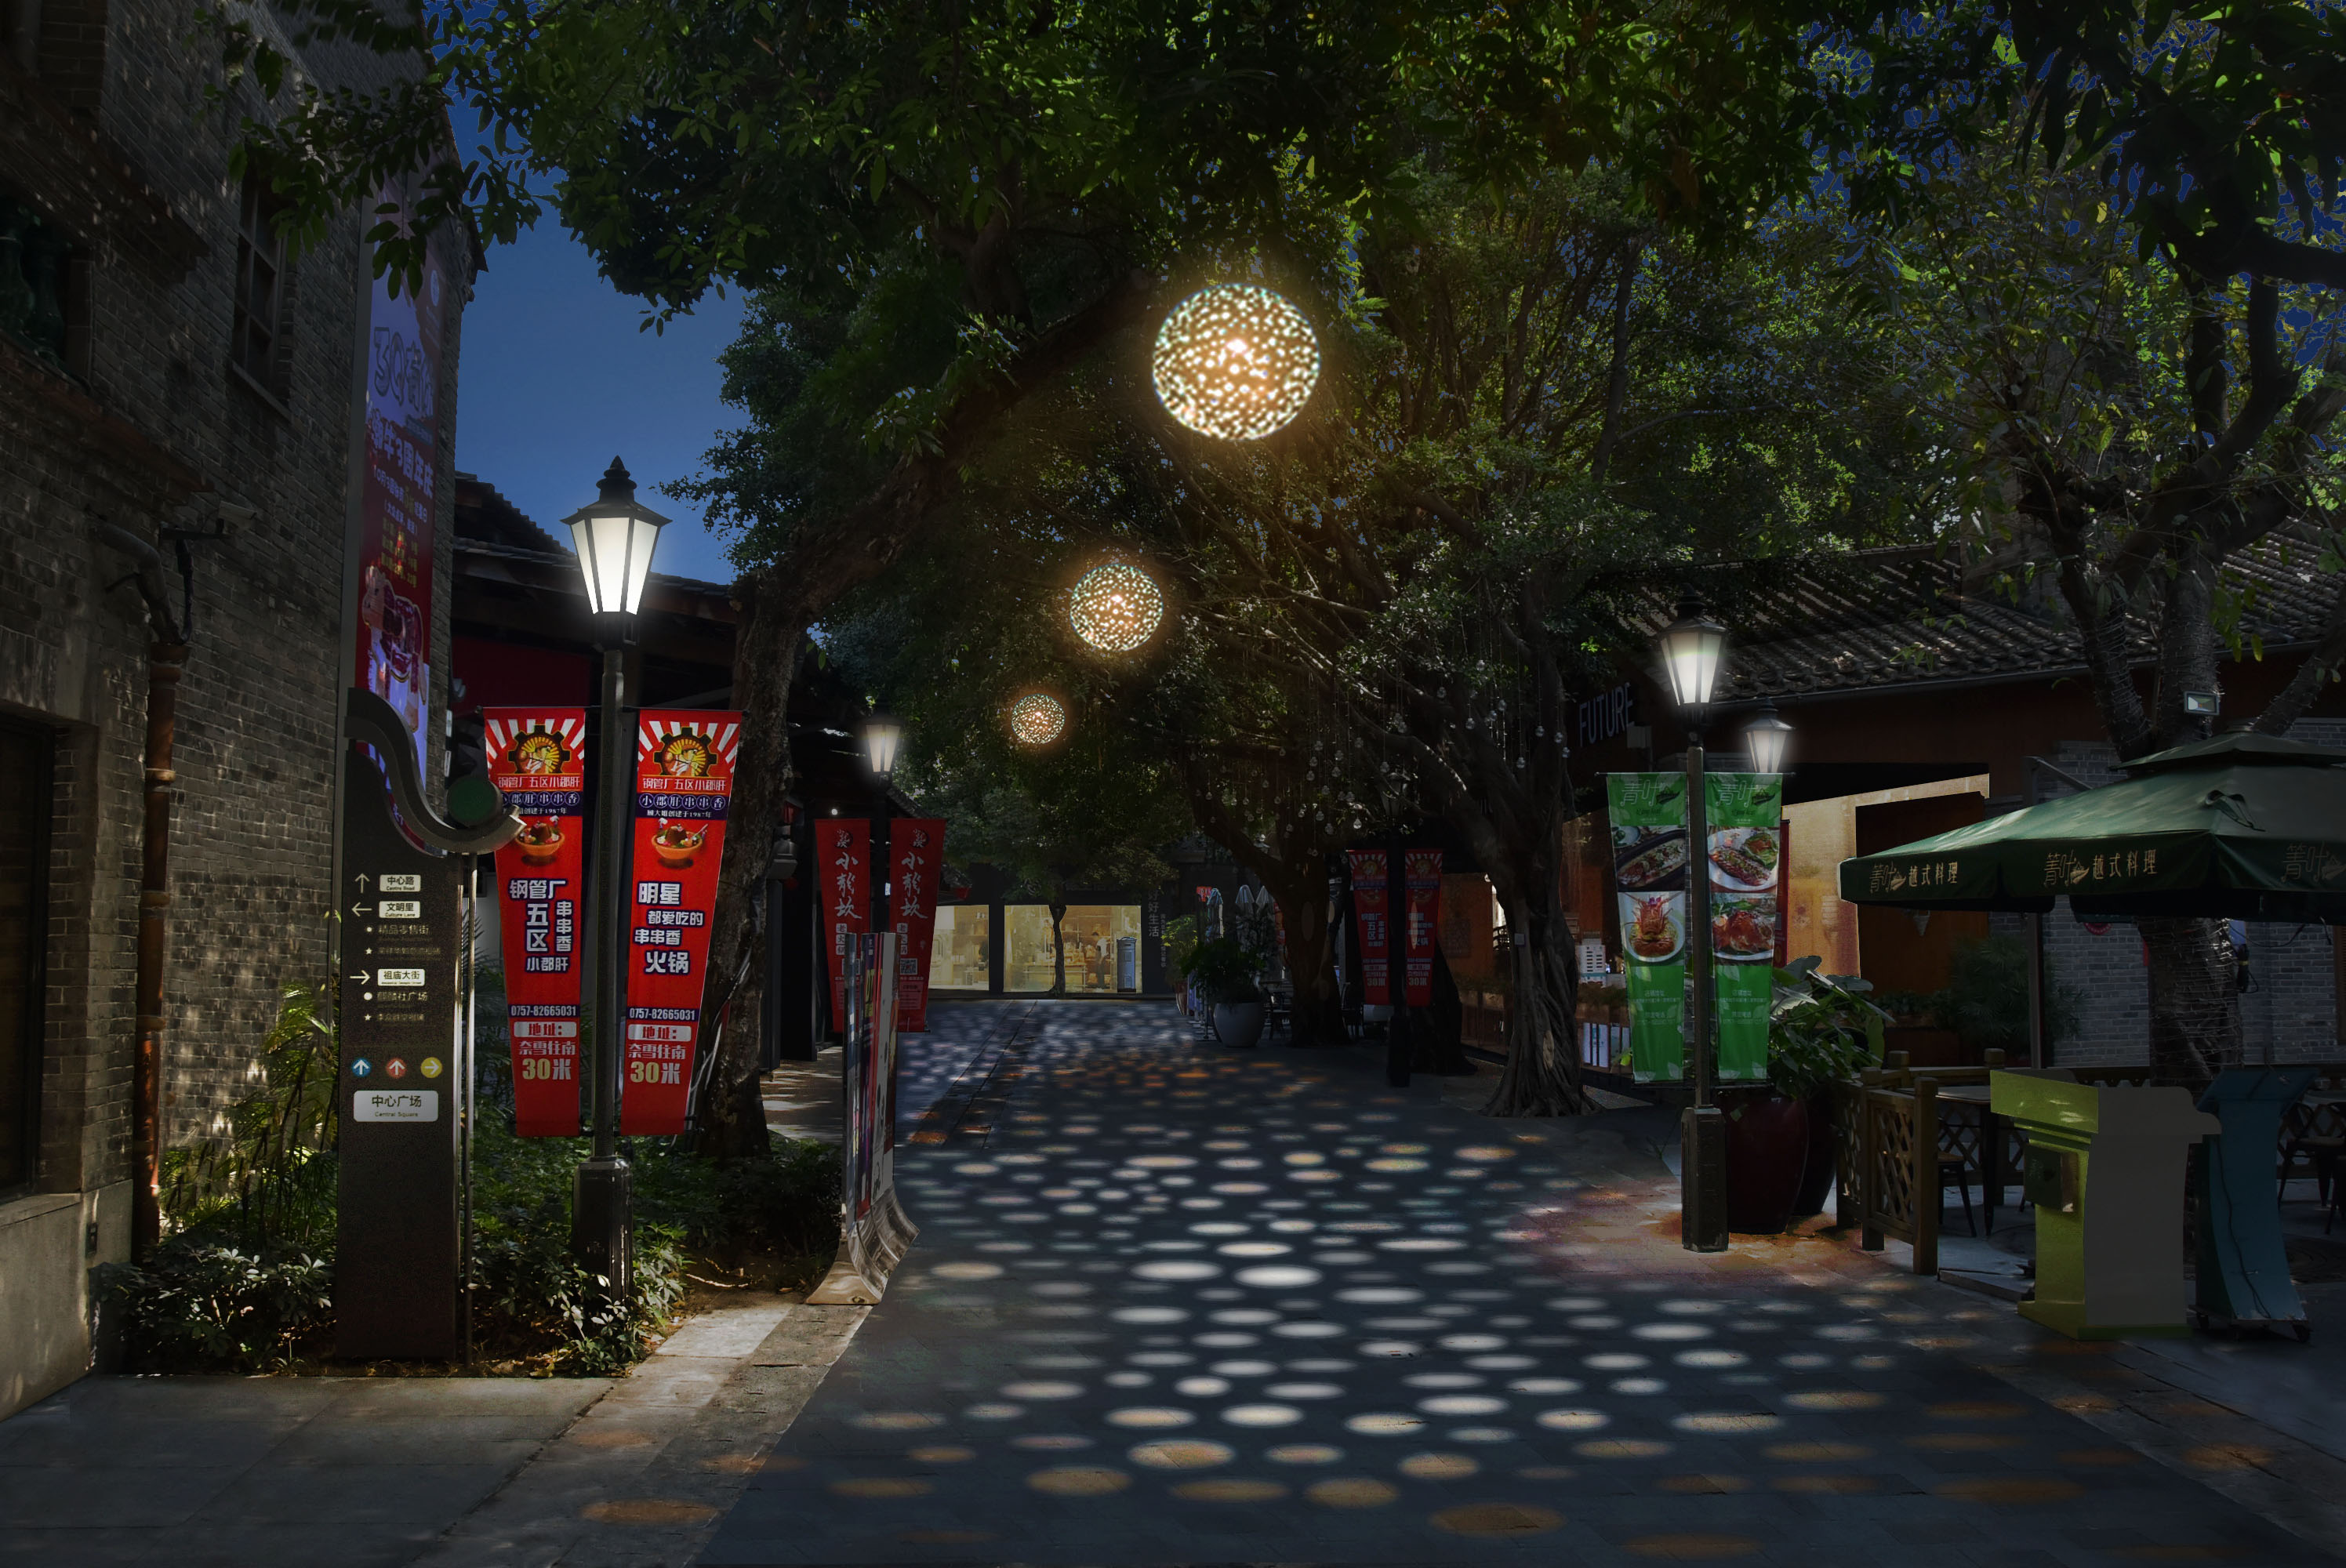 粤光——岭南新天地商业街照明设计创意方案——2021神灯奖申报设计